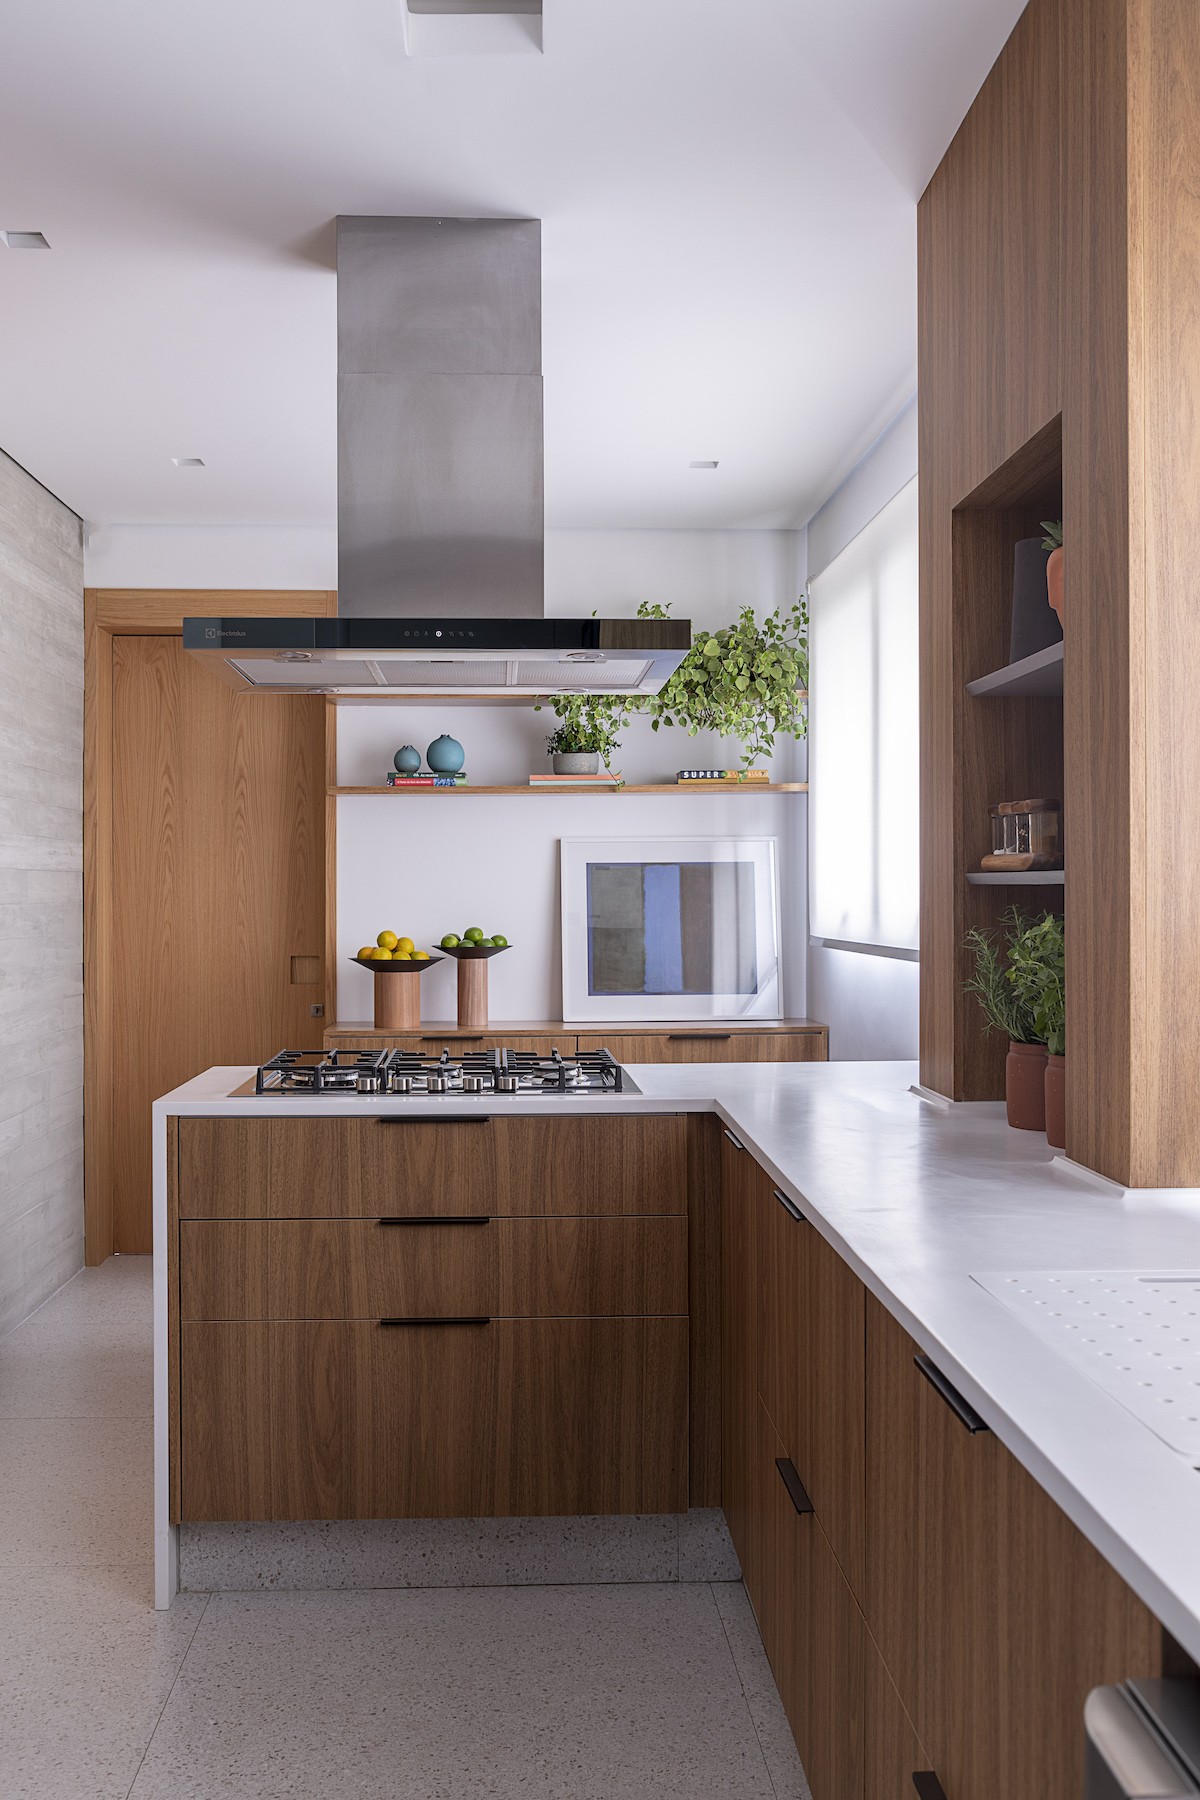 COZINHA | Os tons de cinza contrastam com a madeira na cozinha, presente para aquecer o ambiente (Foto: Divulgação / Rafael Renzo)